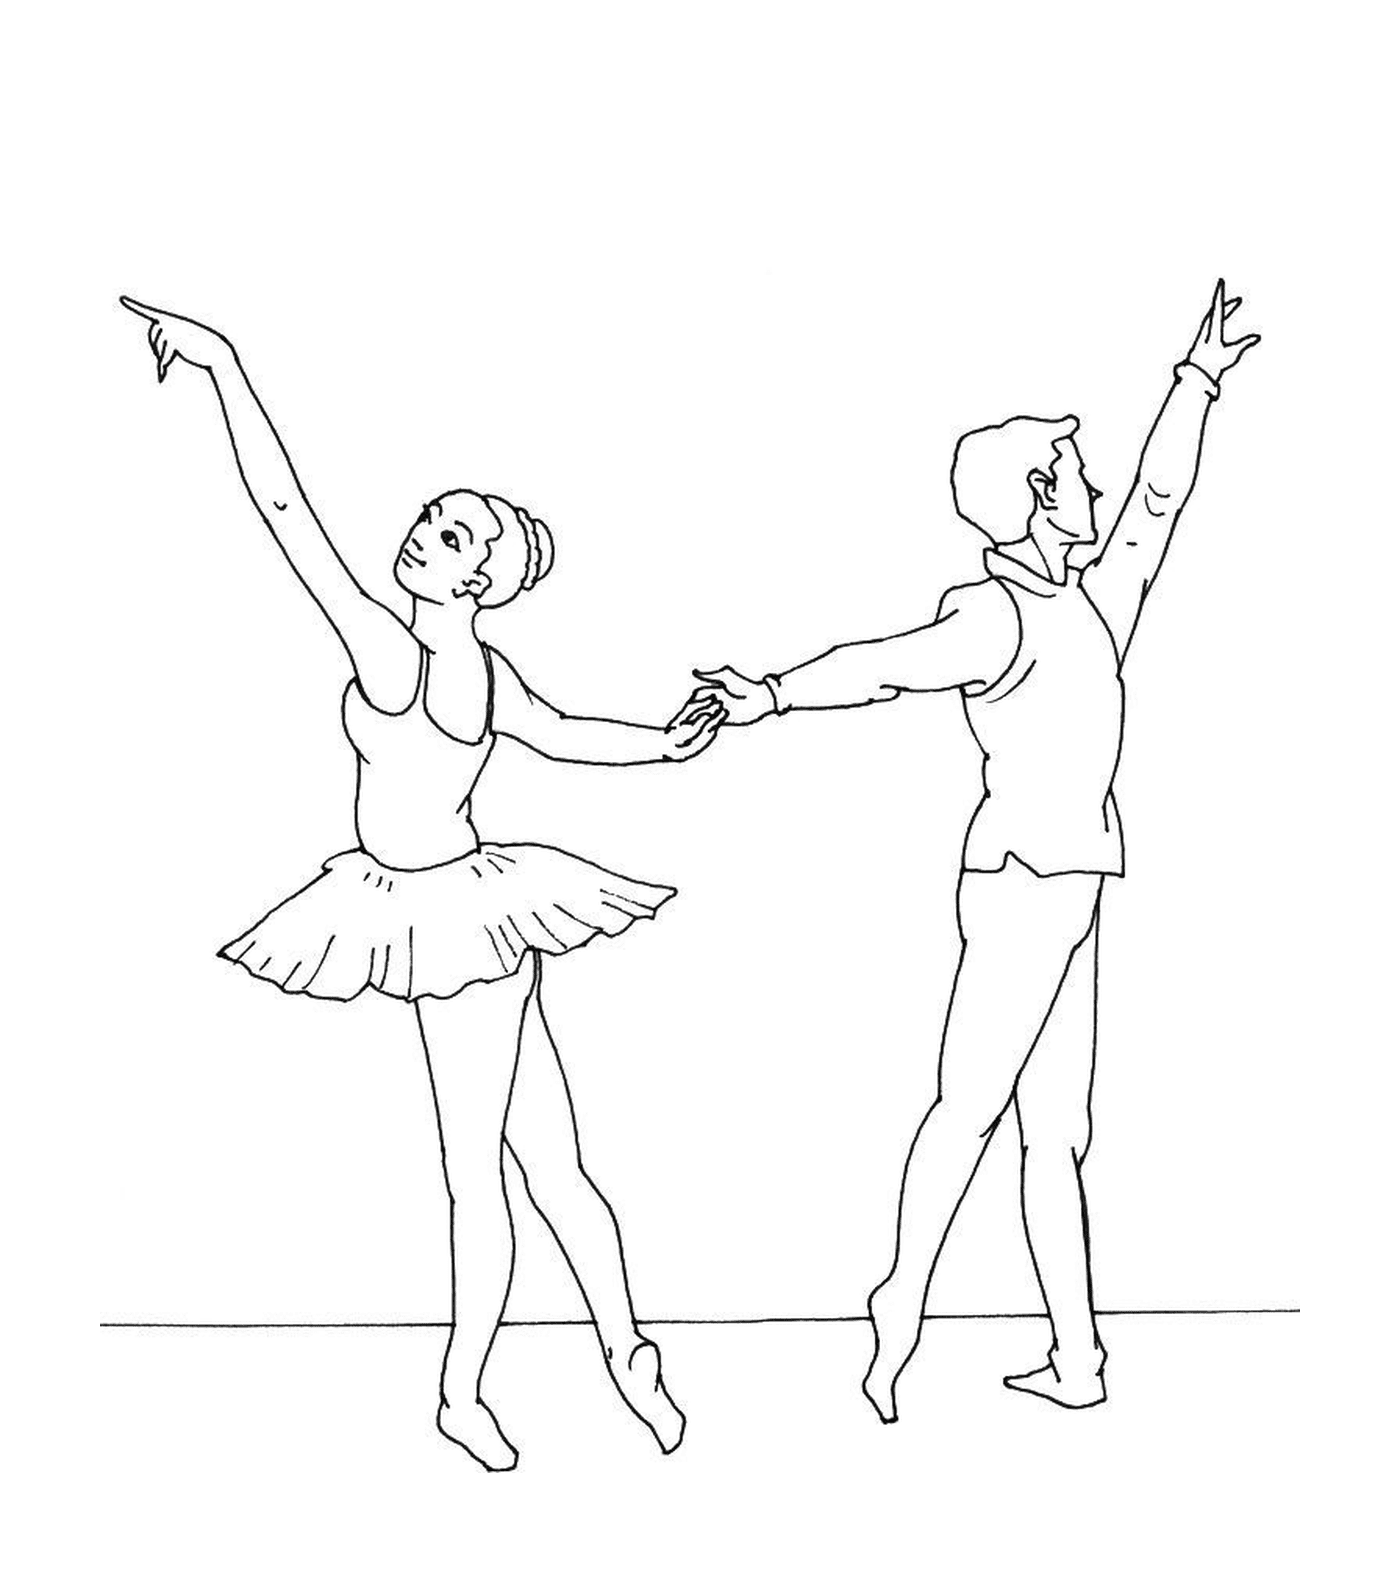  Tänzer und Tänzer halten Hand 